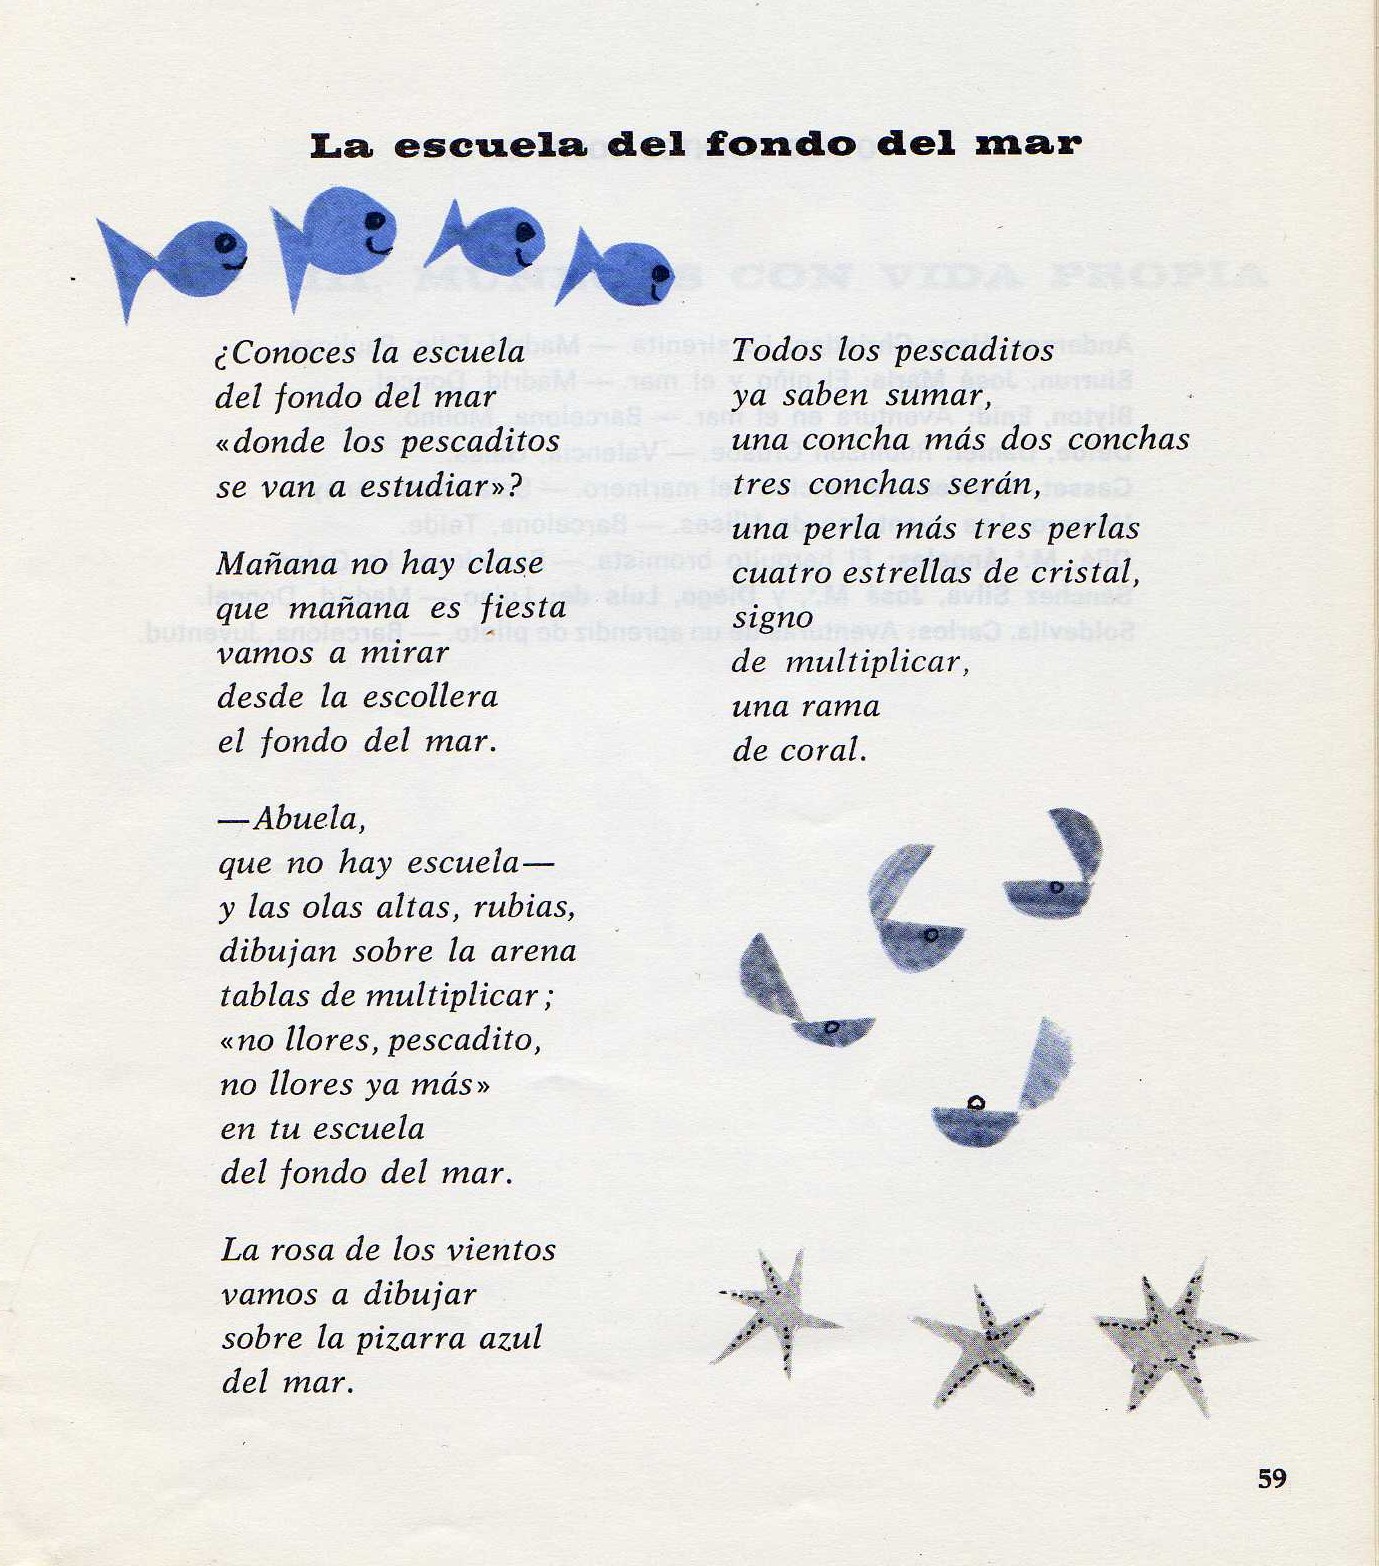 Poema La escuela del fondo del mar, Celia Viñas